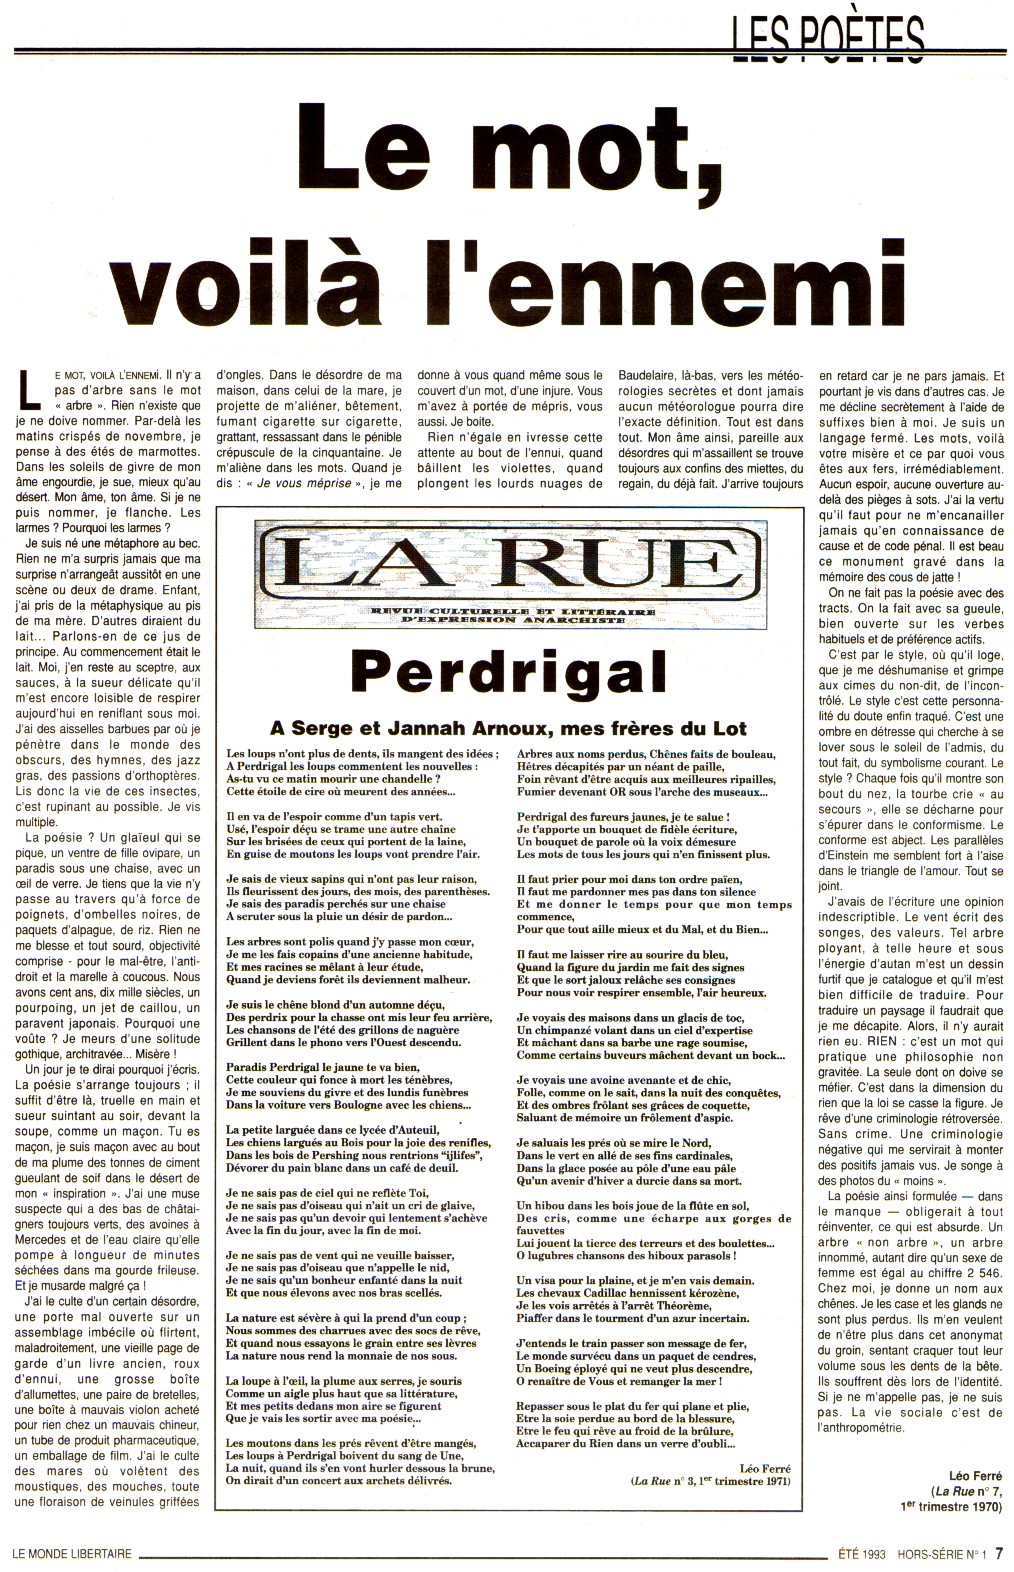 Léo Ferré - Le Monde Libertaire Hors-série N°1 de Juillet 1993